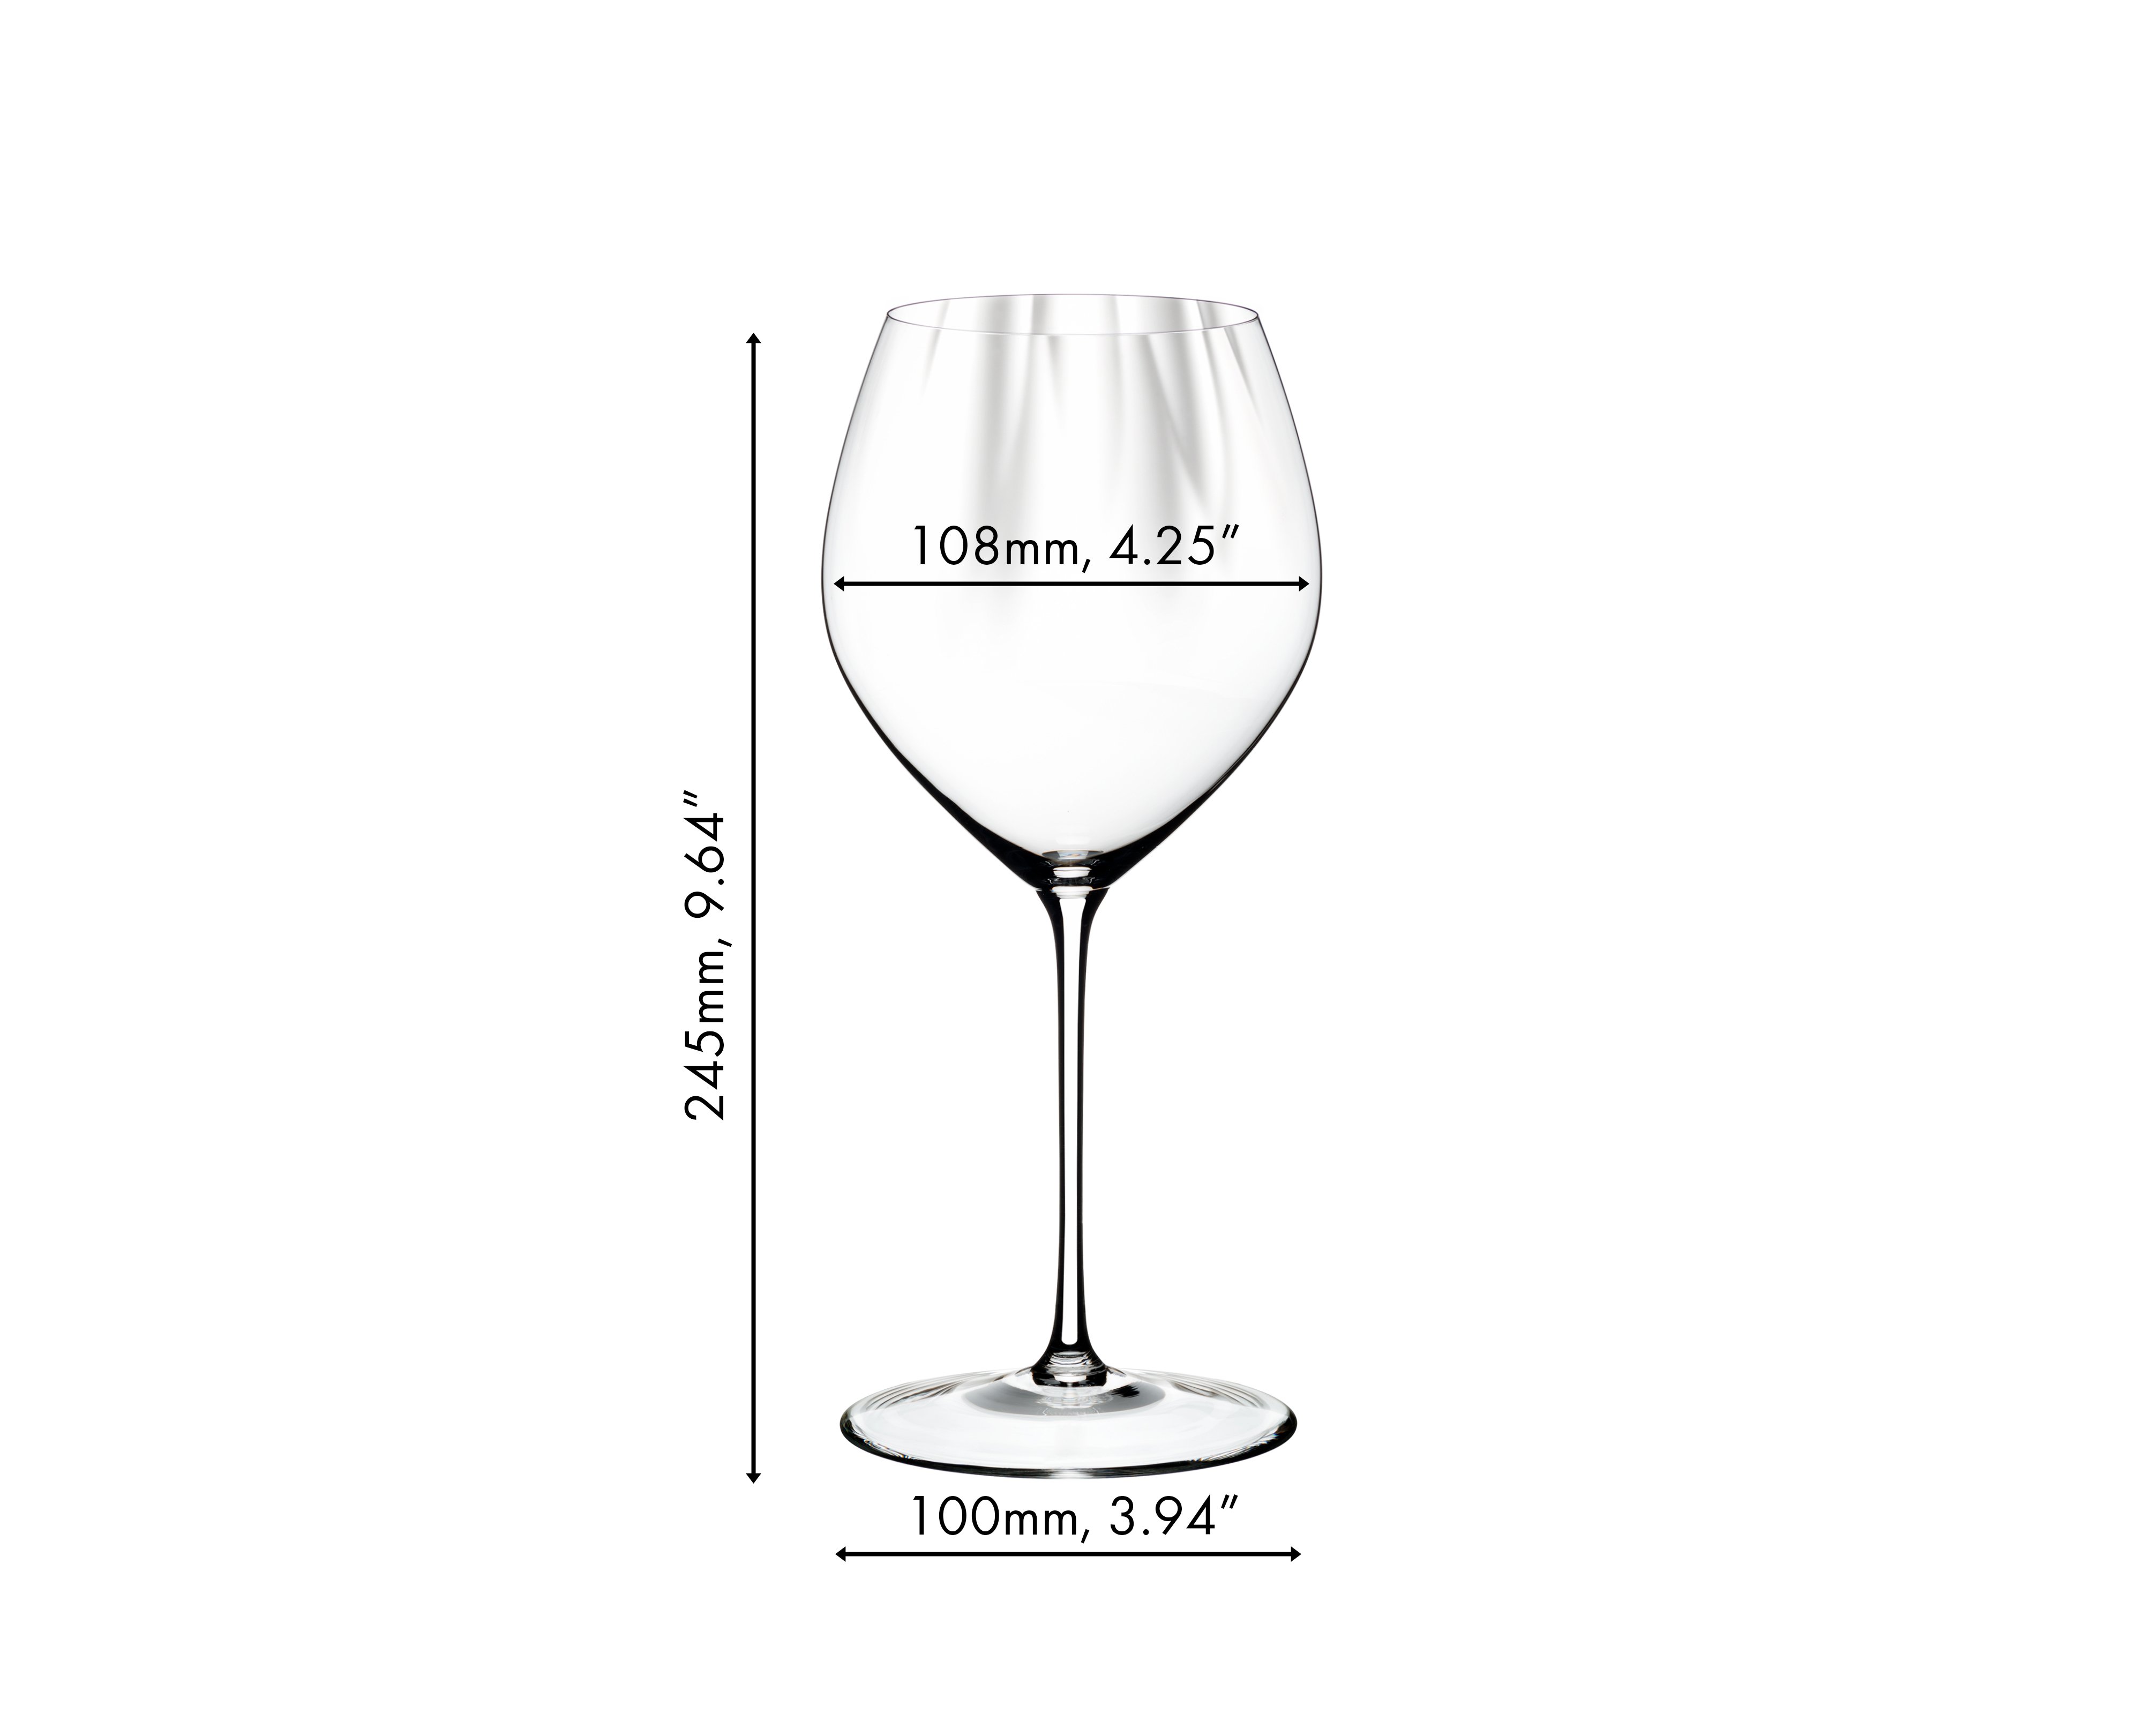 VINODY (ENOTECA) Chardonnay White Wine Glass – Global Hotelware